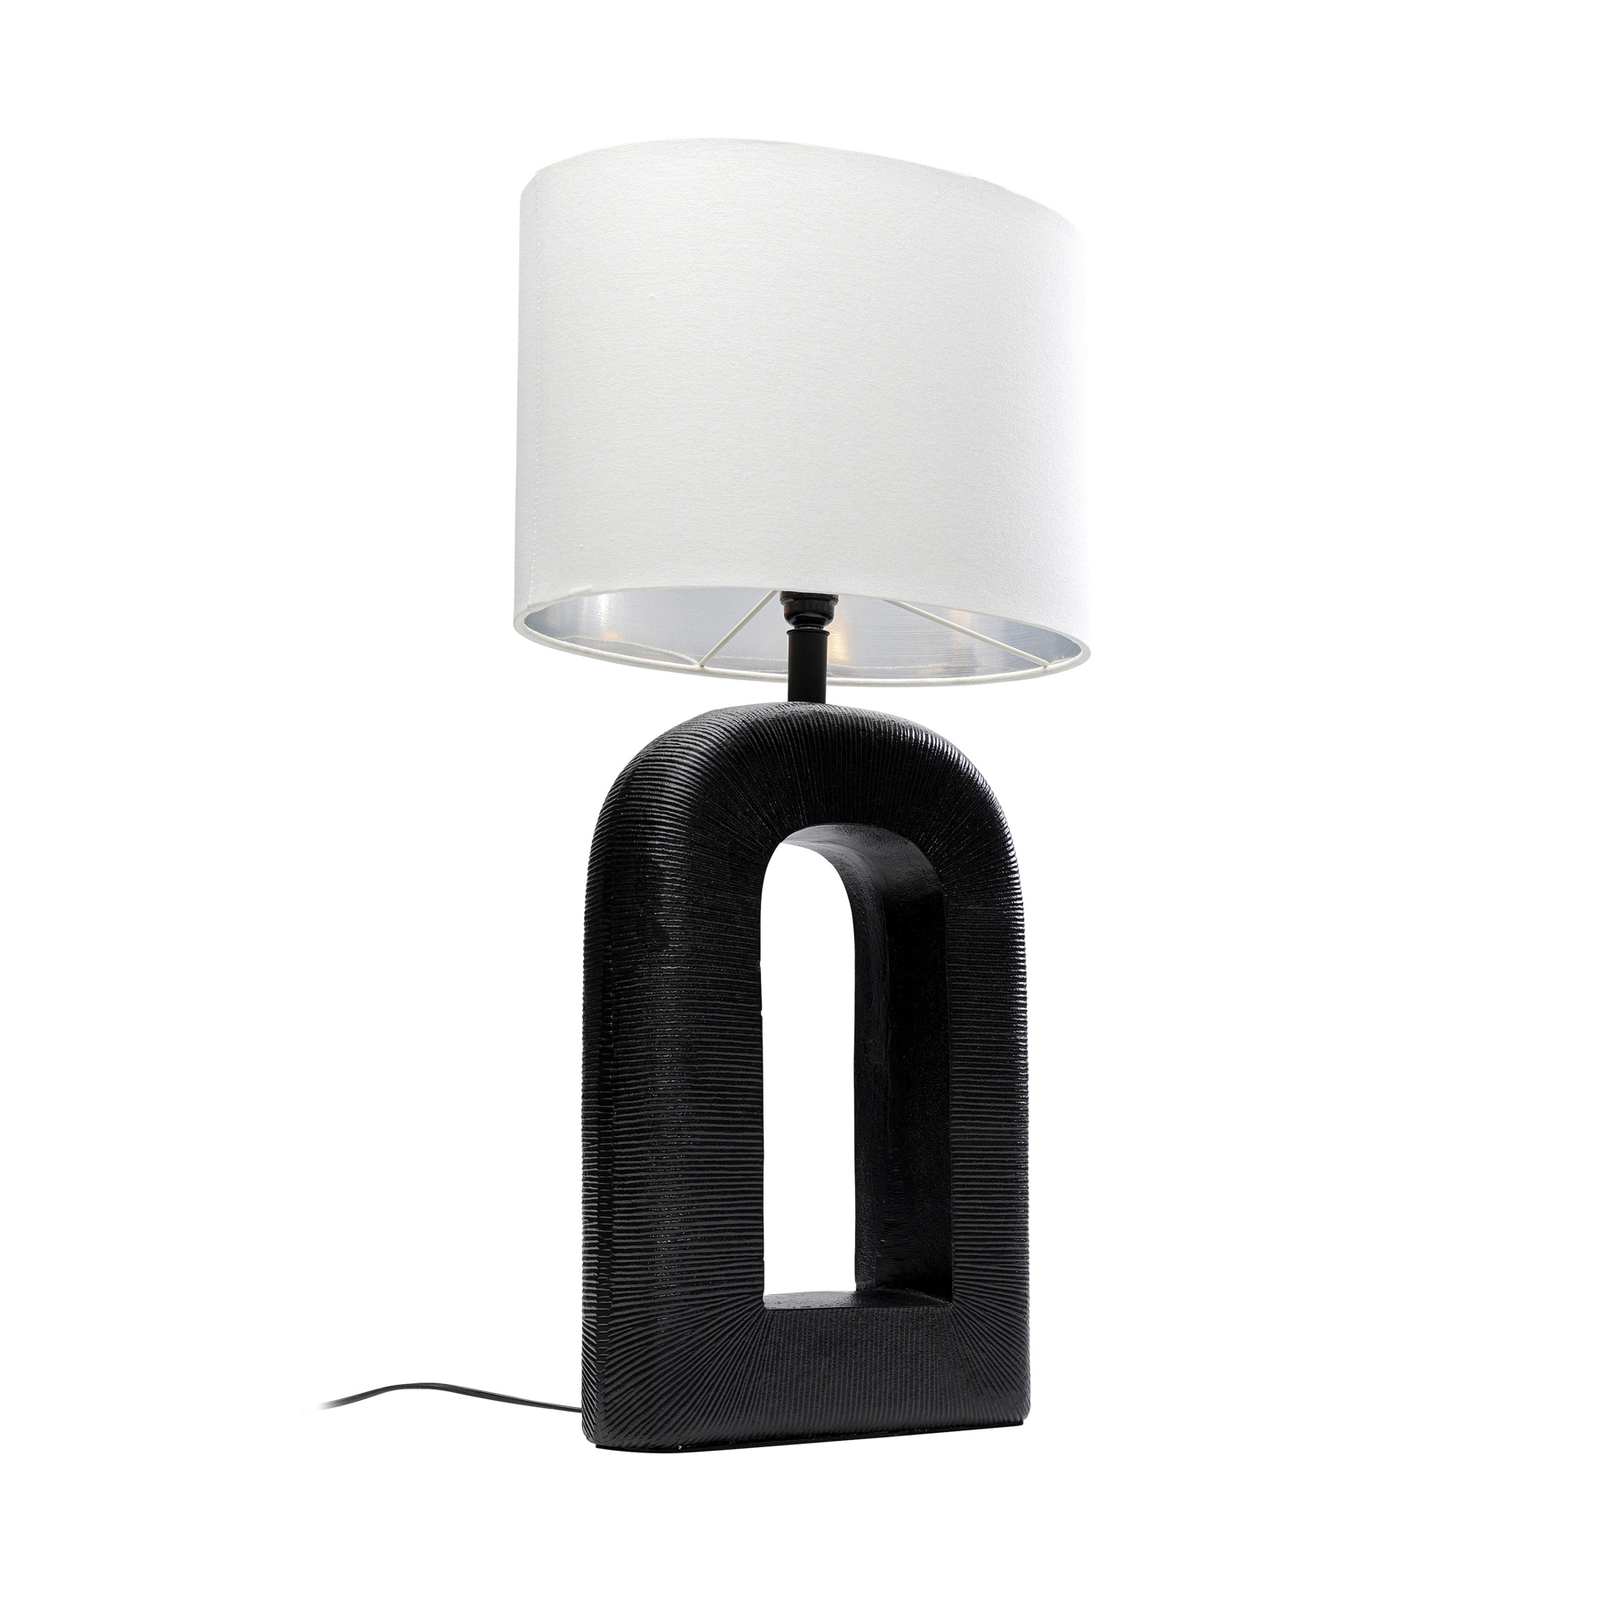 KARE Tube bordslampa, svart/vit, linnetextil, höjd 79 cm